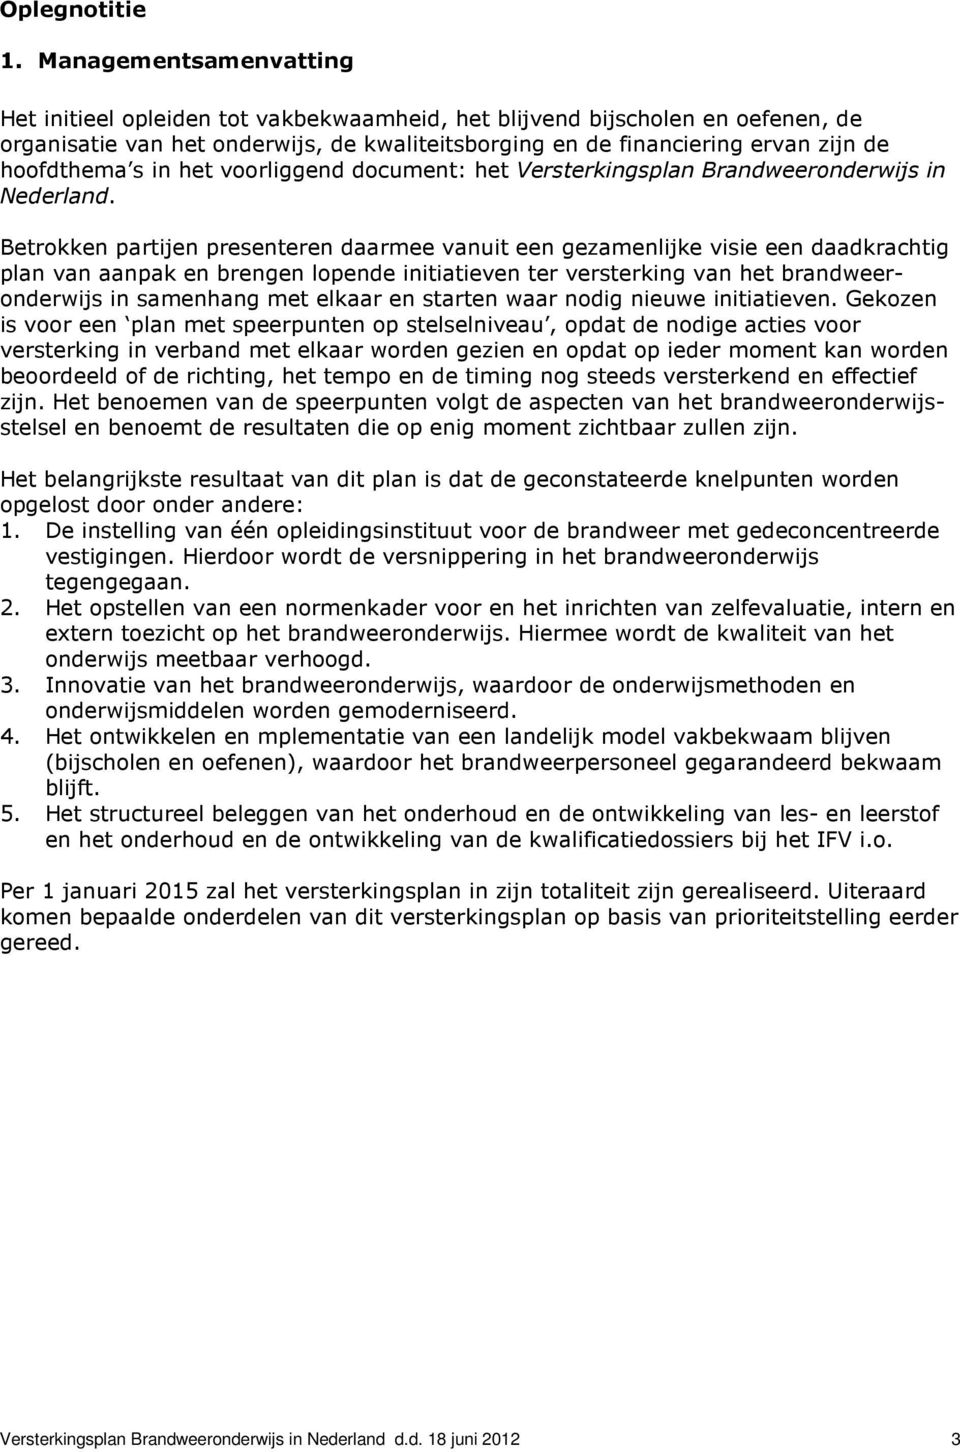 s in het voorliggend document: het Versterkingsplan Brandweeronderwijs in Nederland.